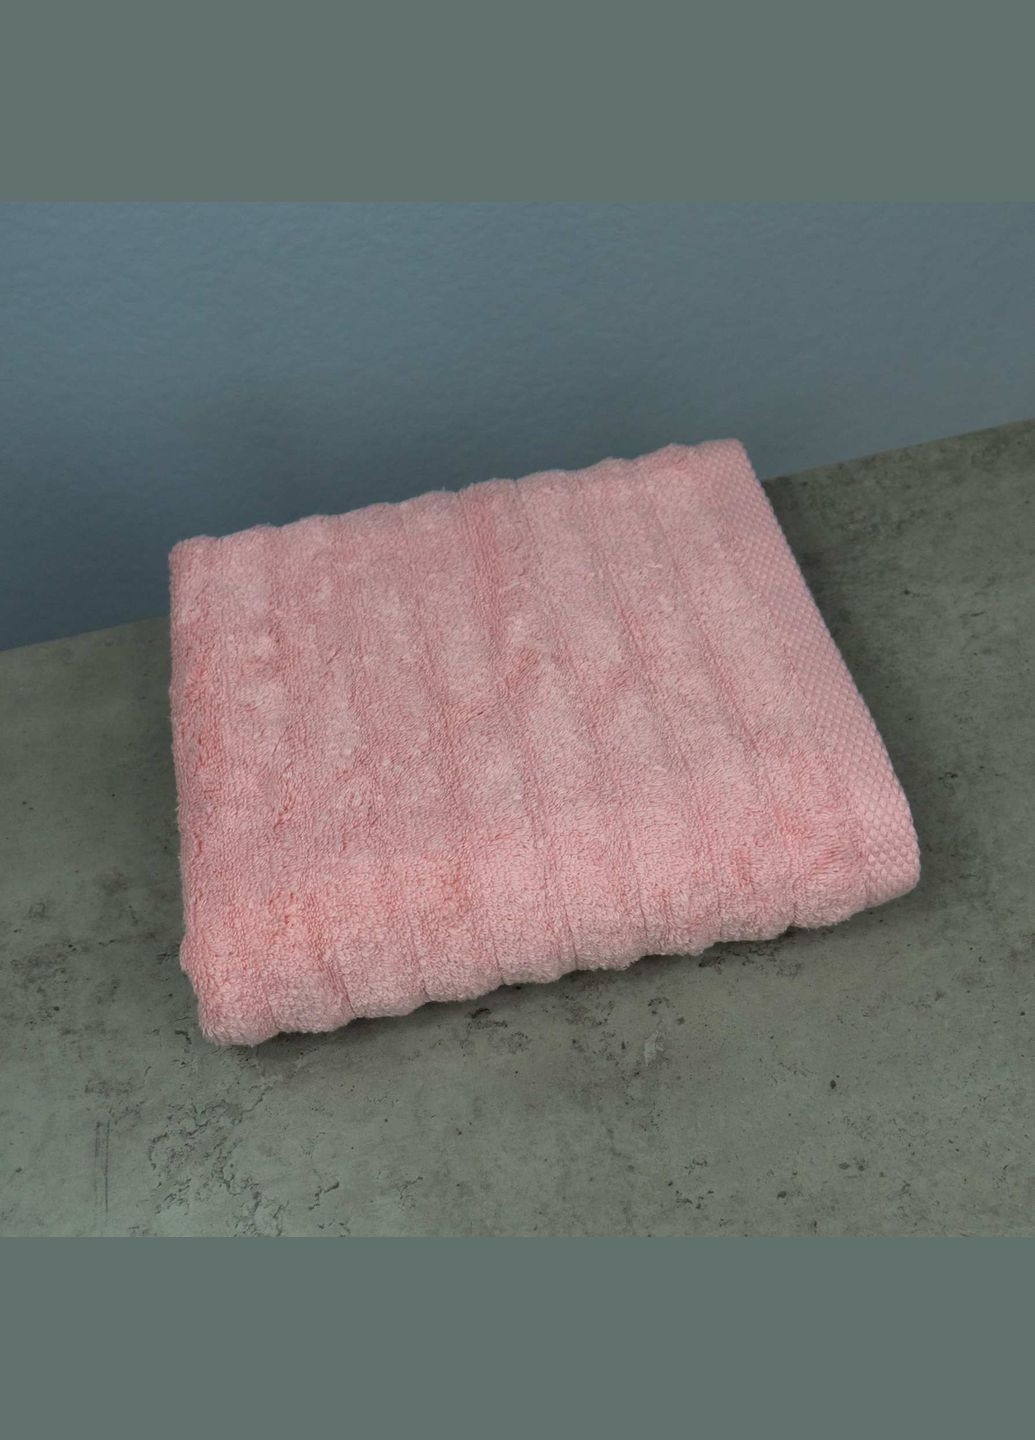 GM Textile рушник махровий для обличчя та рук 40x70см преміум якості зеро твіст 550г/м2 (рожевий) рожевий виробництво -